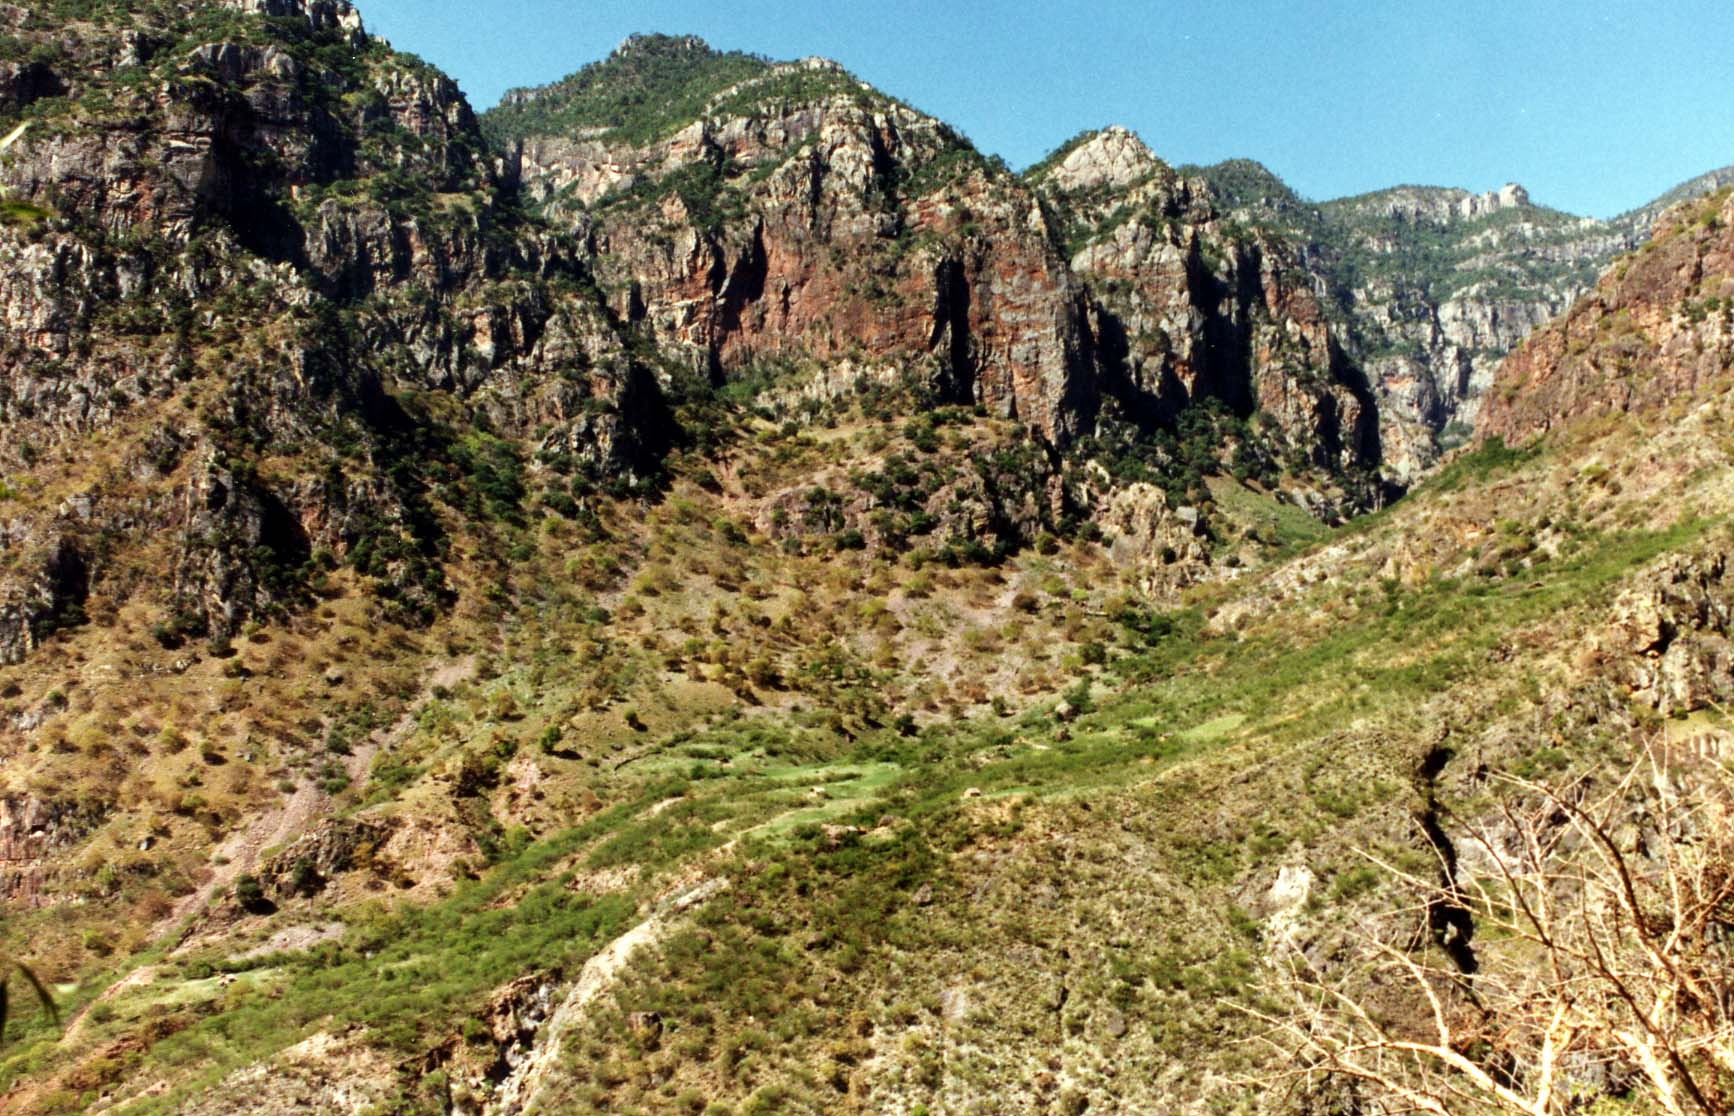 Batopilas Canyon